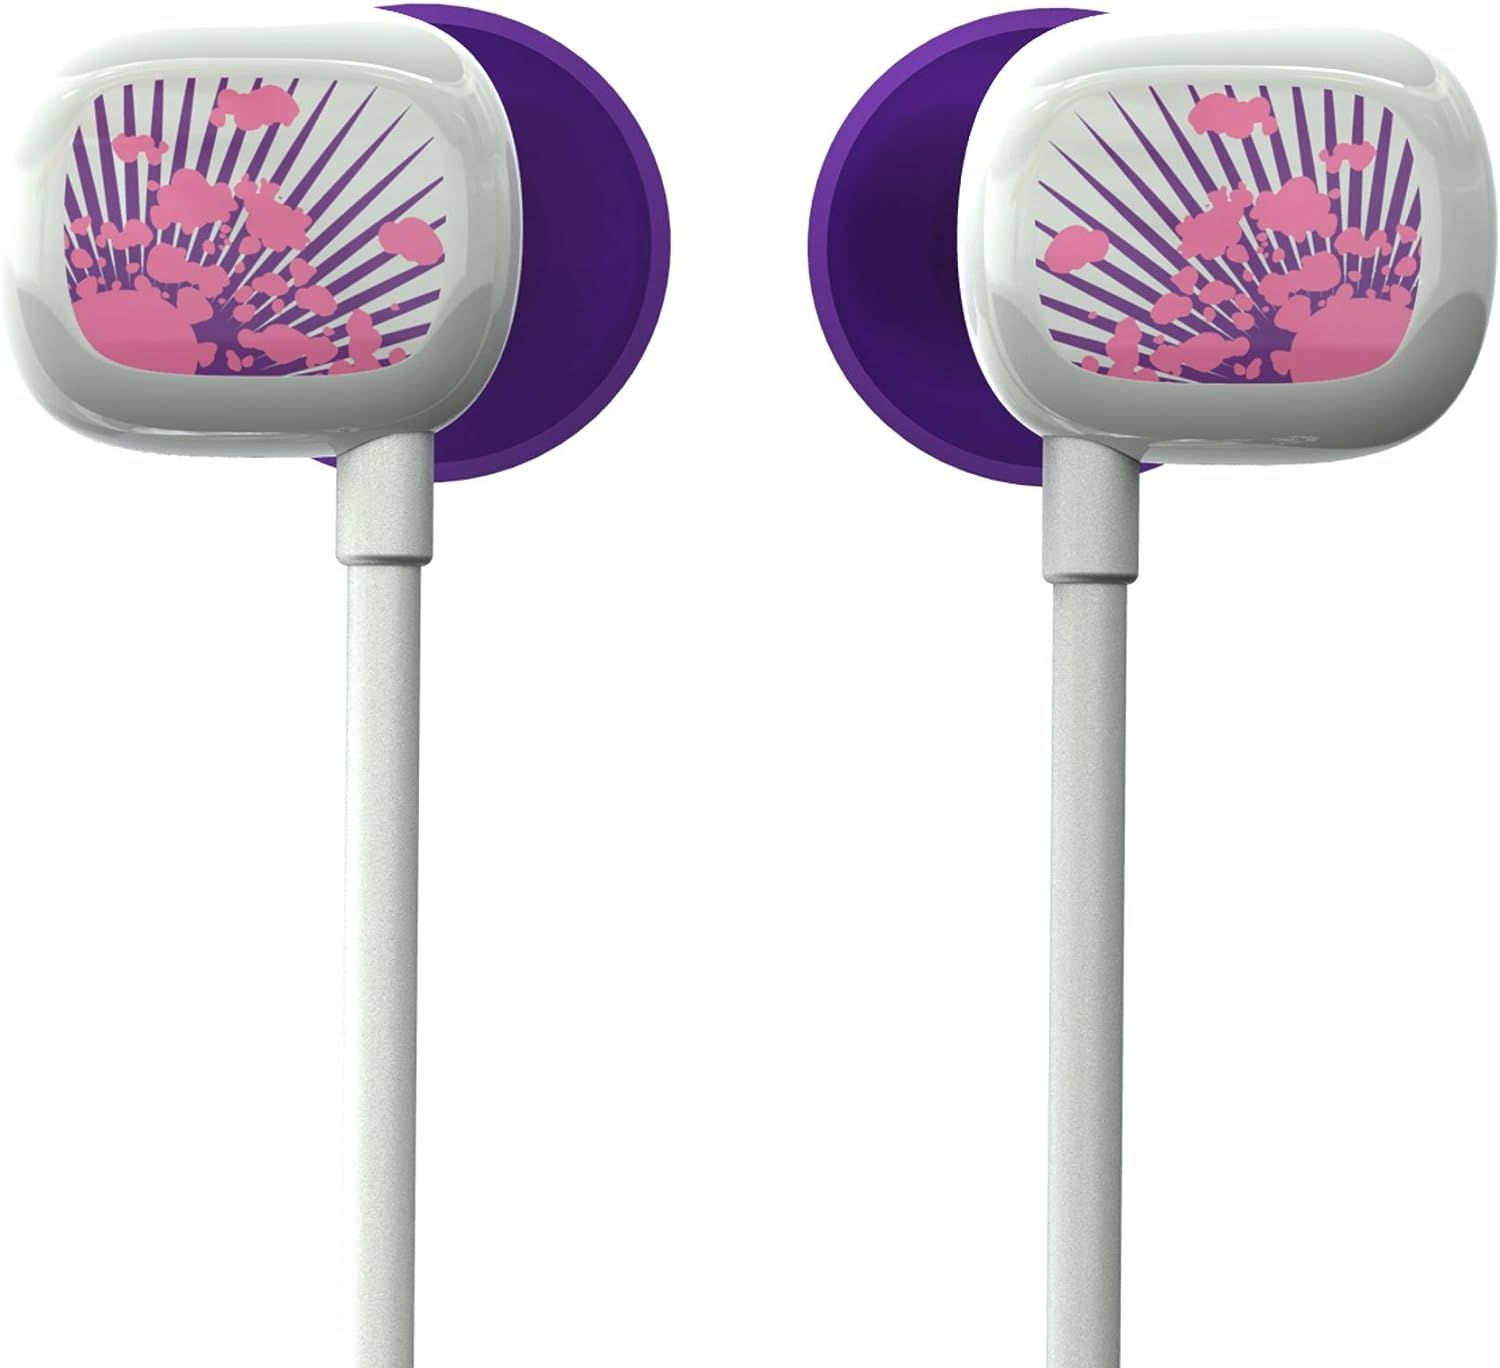 LOGITECH Ultimate Kopfhörer Violett Ears In-ear 100